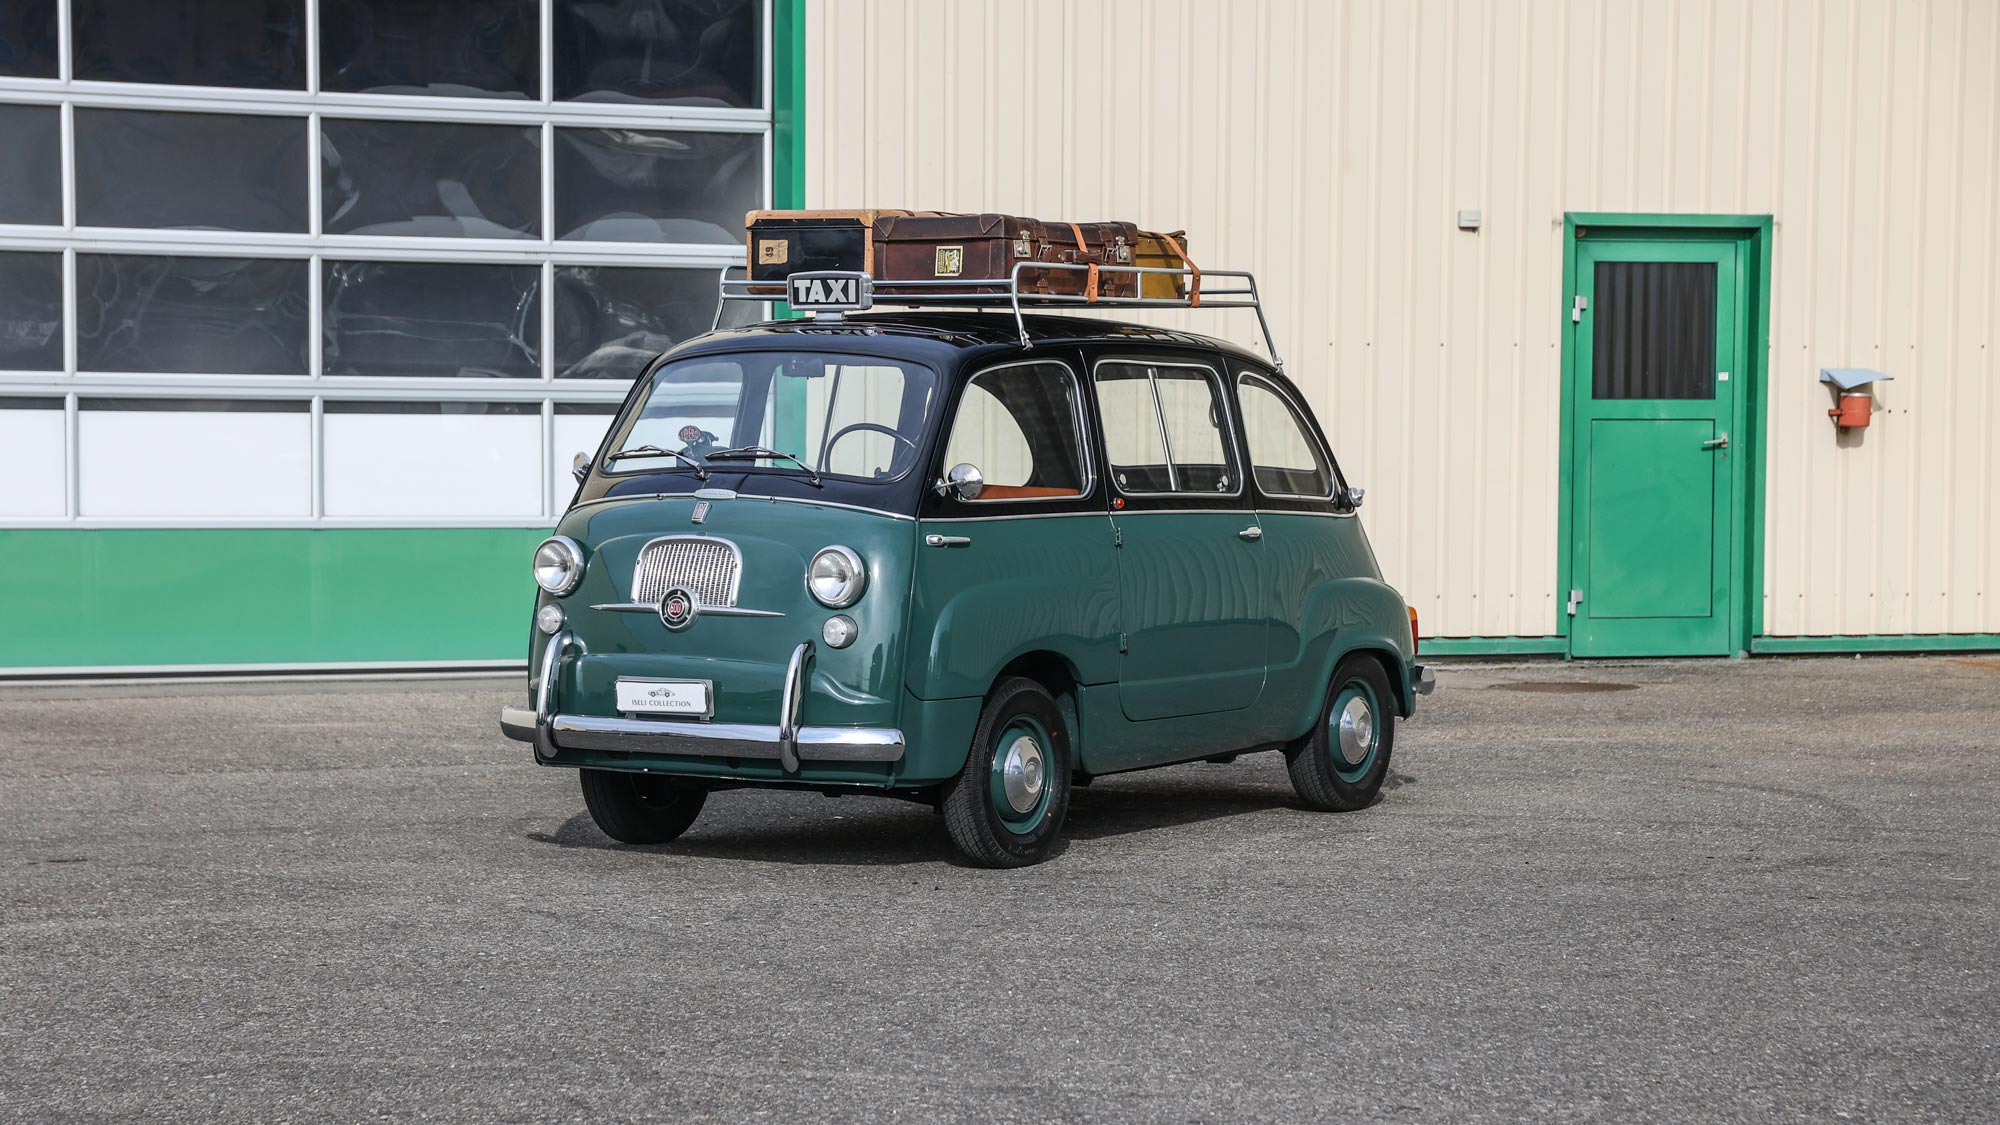 1964 Fiat Multipla taxi